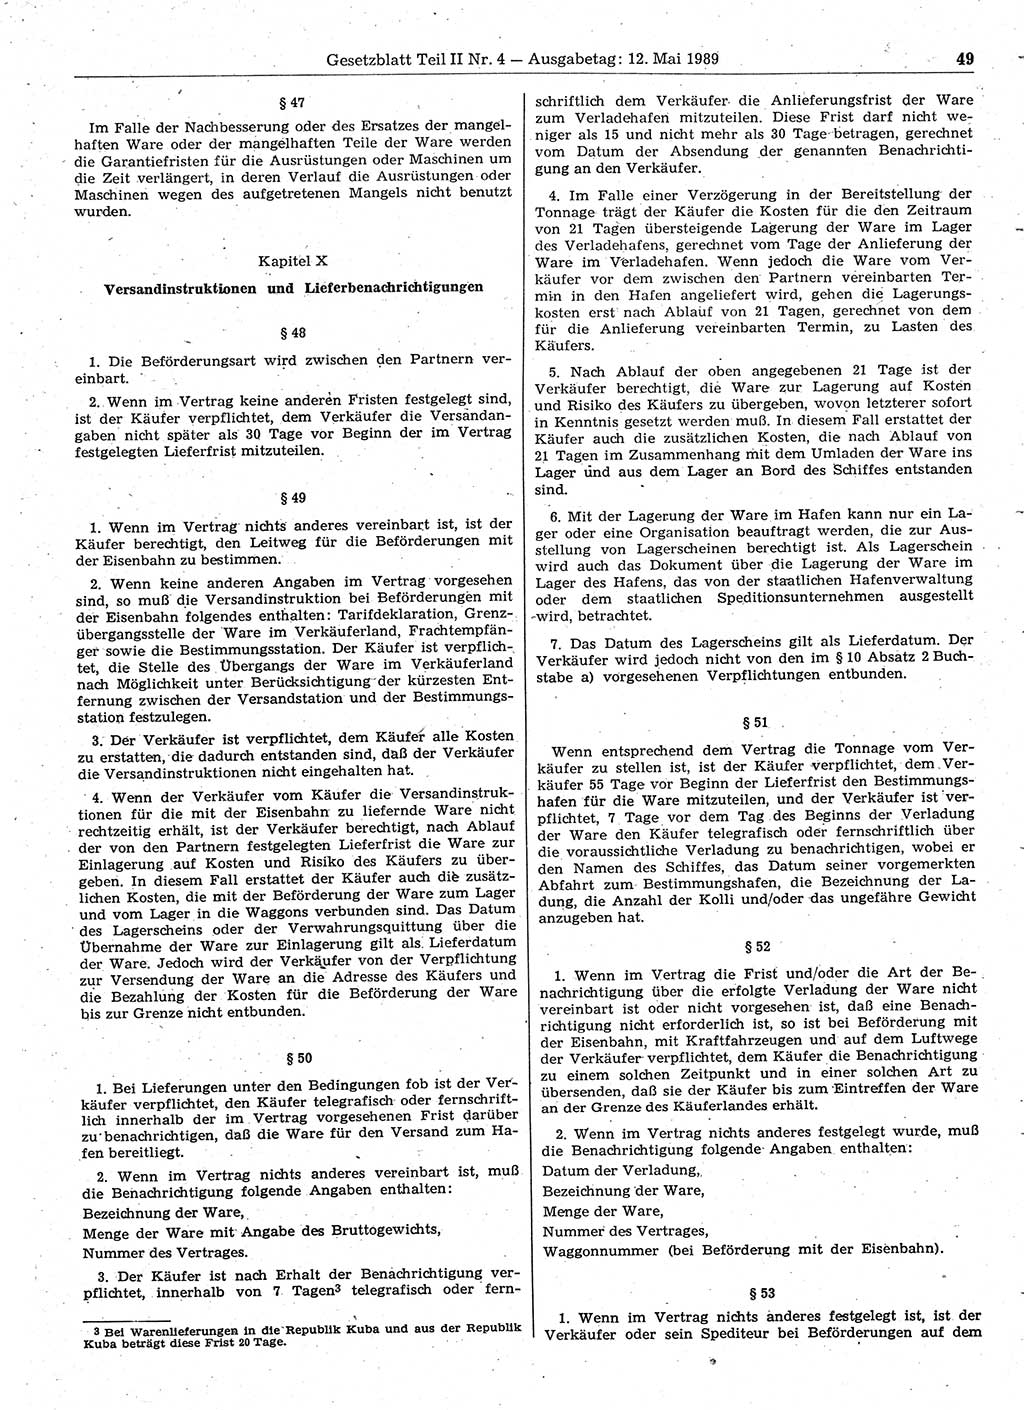 Gesetzblatt (GBl.) der Deutschen Demokratischen Republik (DDR) Teil ⅠⅠ 1989, Seite 49 (GBl. DDR ⅠⅠ 1989, S. 49)